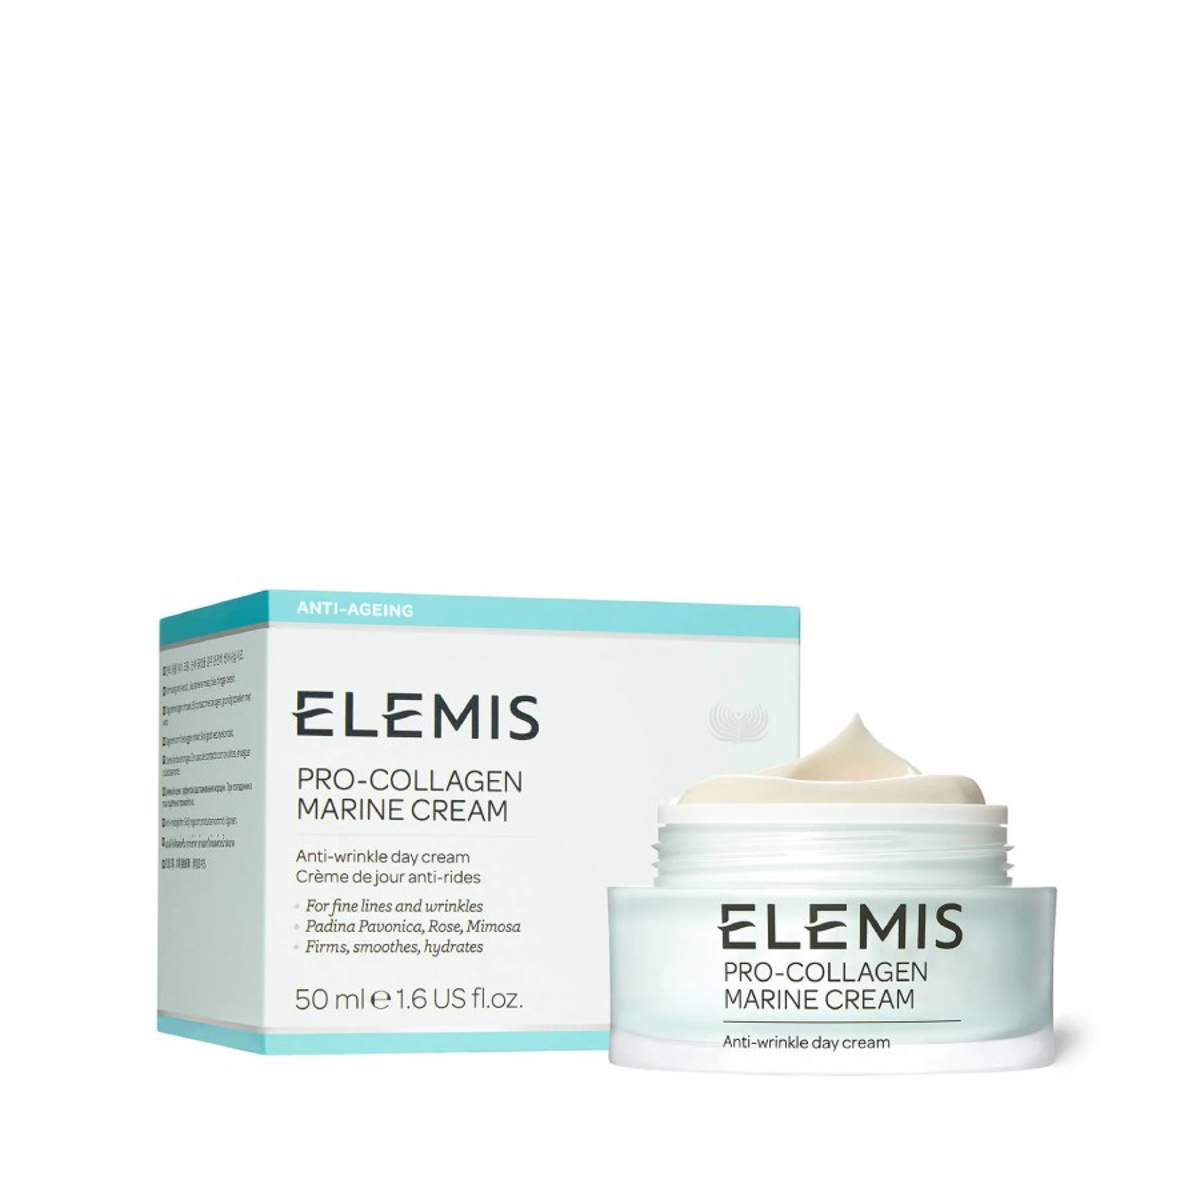 Elemis Pro Collagen Marine Cream con un 40% de descuento en Amazon Producto